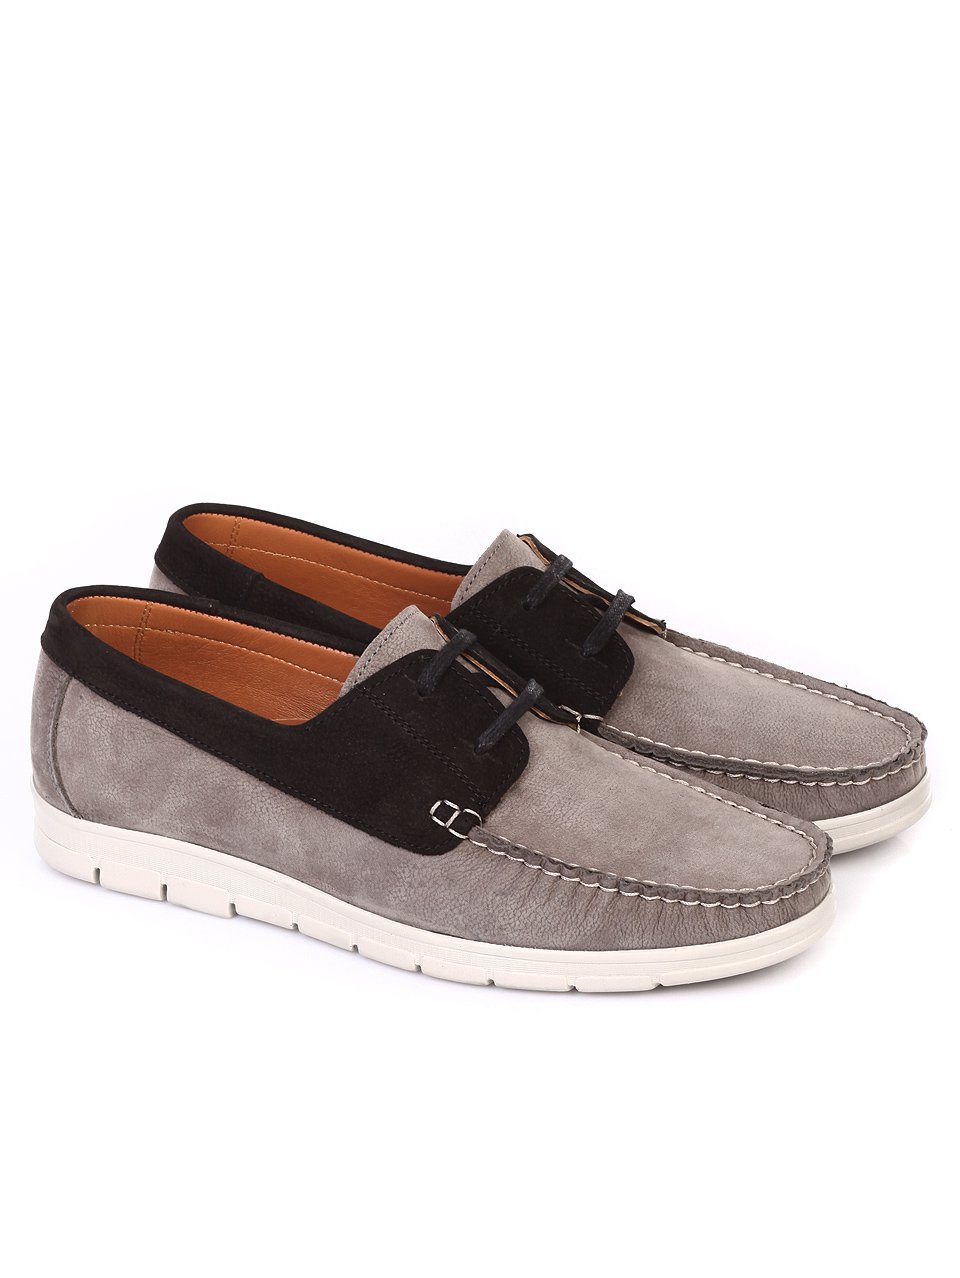 Ежедневни мъжки обувки от естествен набук в сиво 7AT-18527 grey